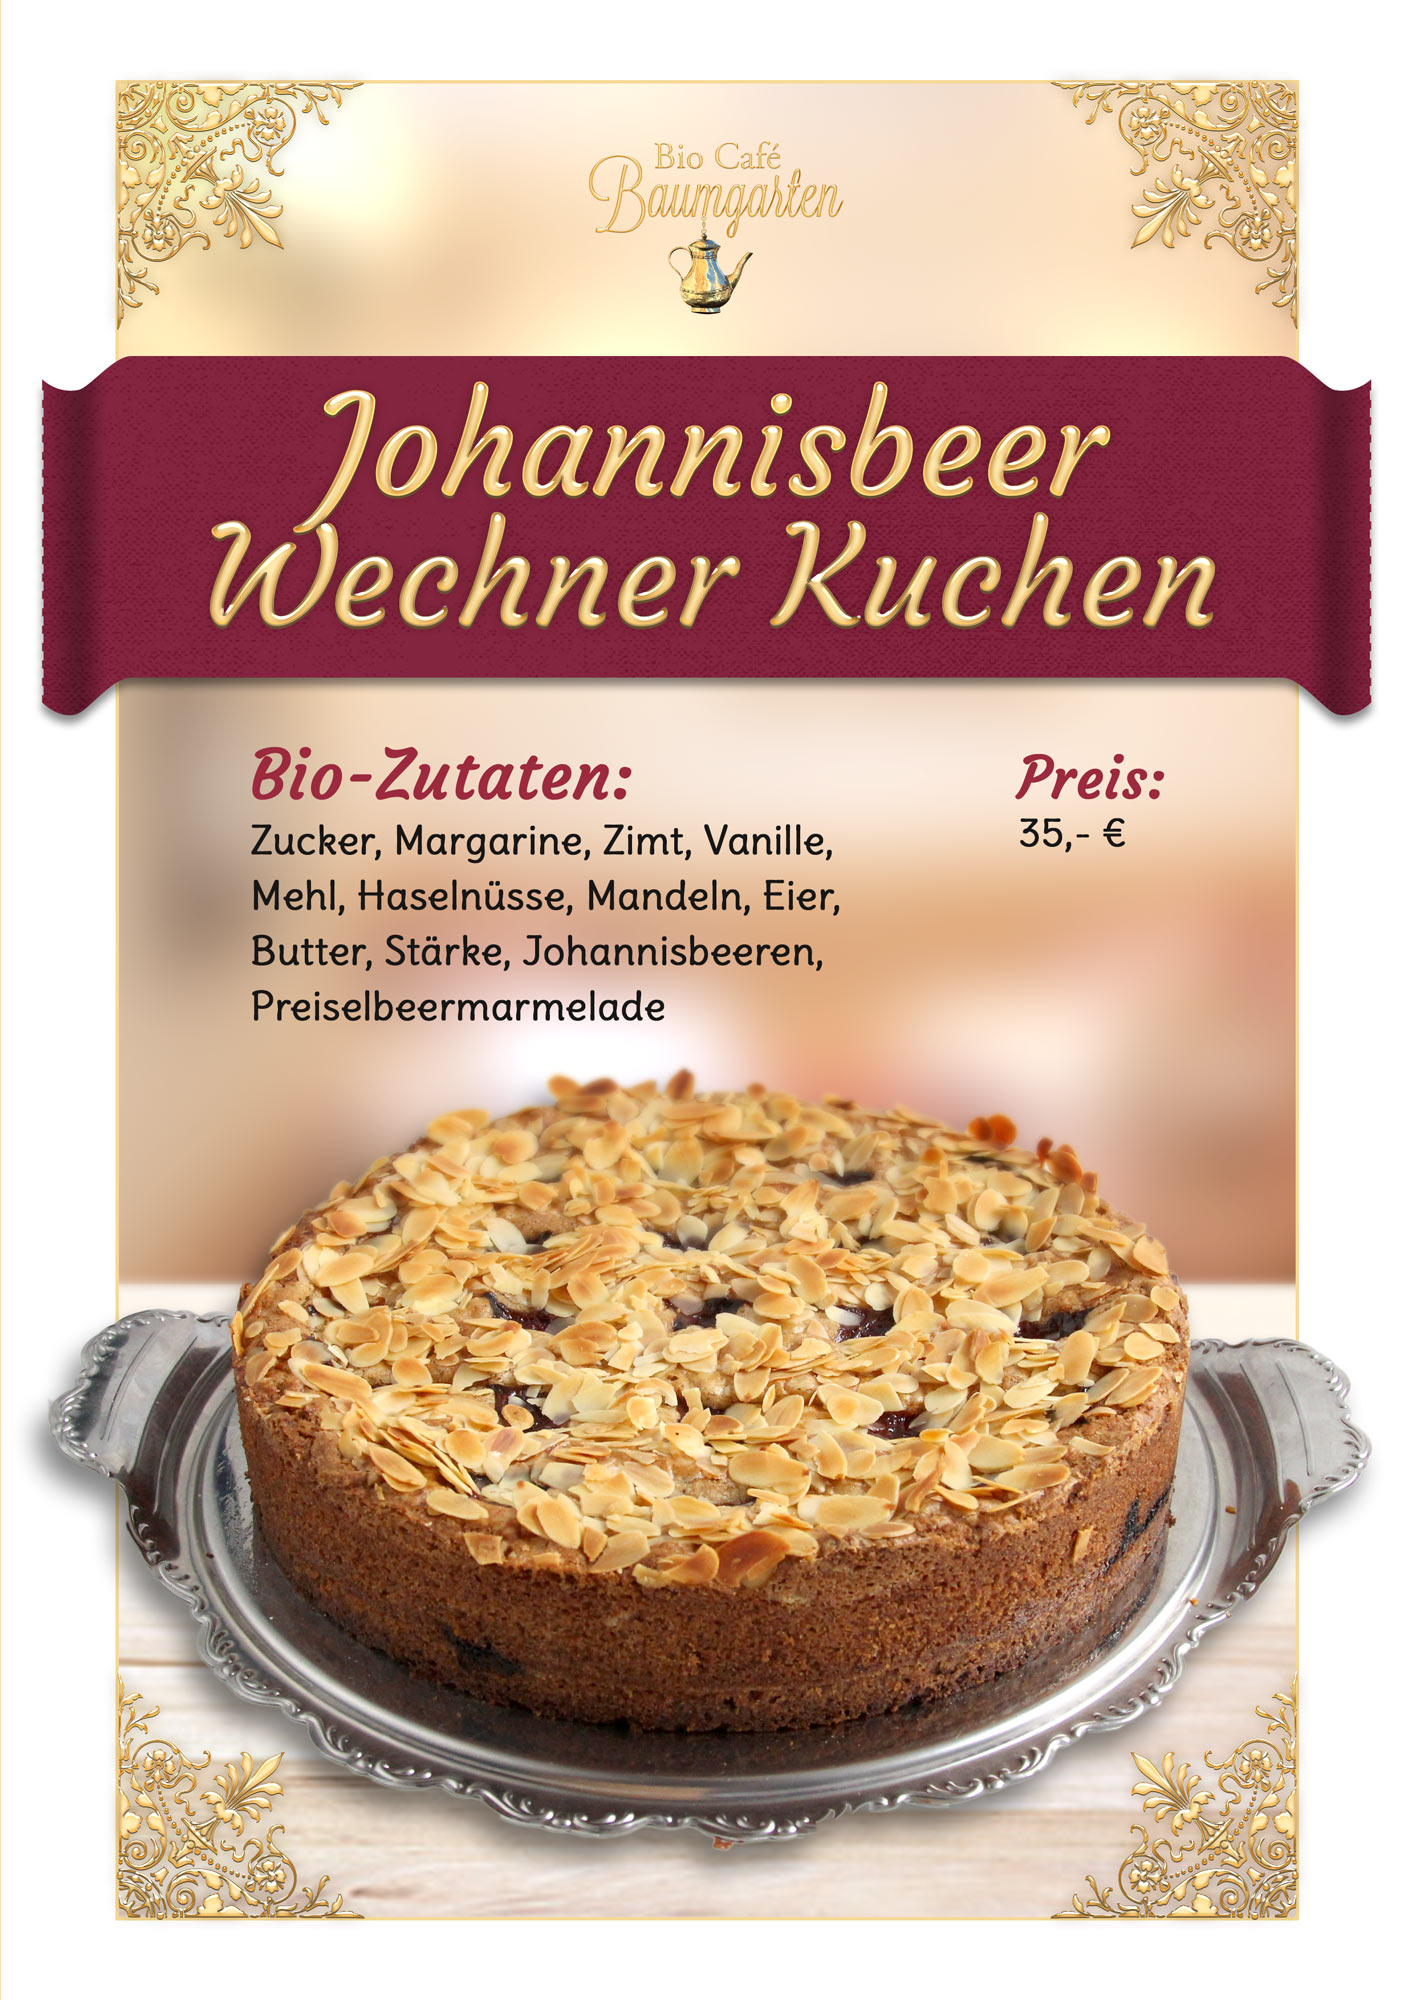 Johannisbeer-Wechner-Kuchen